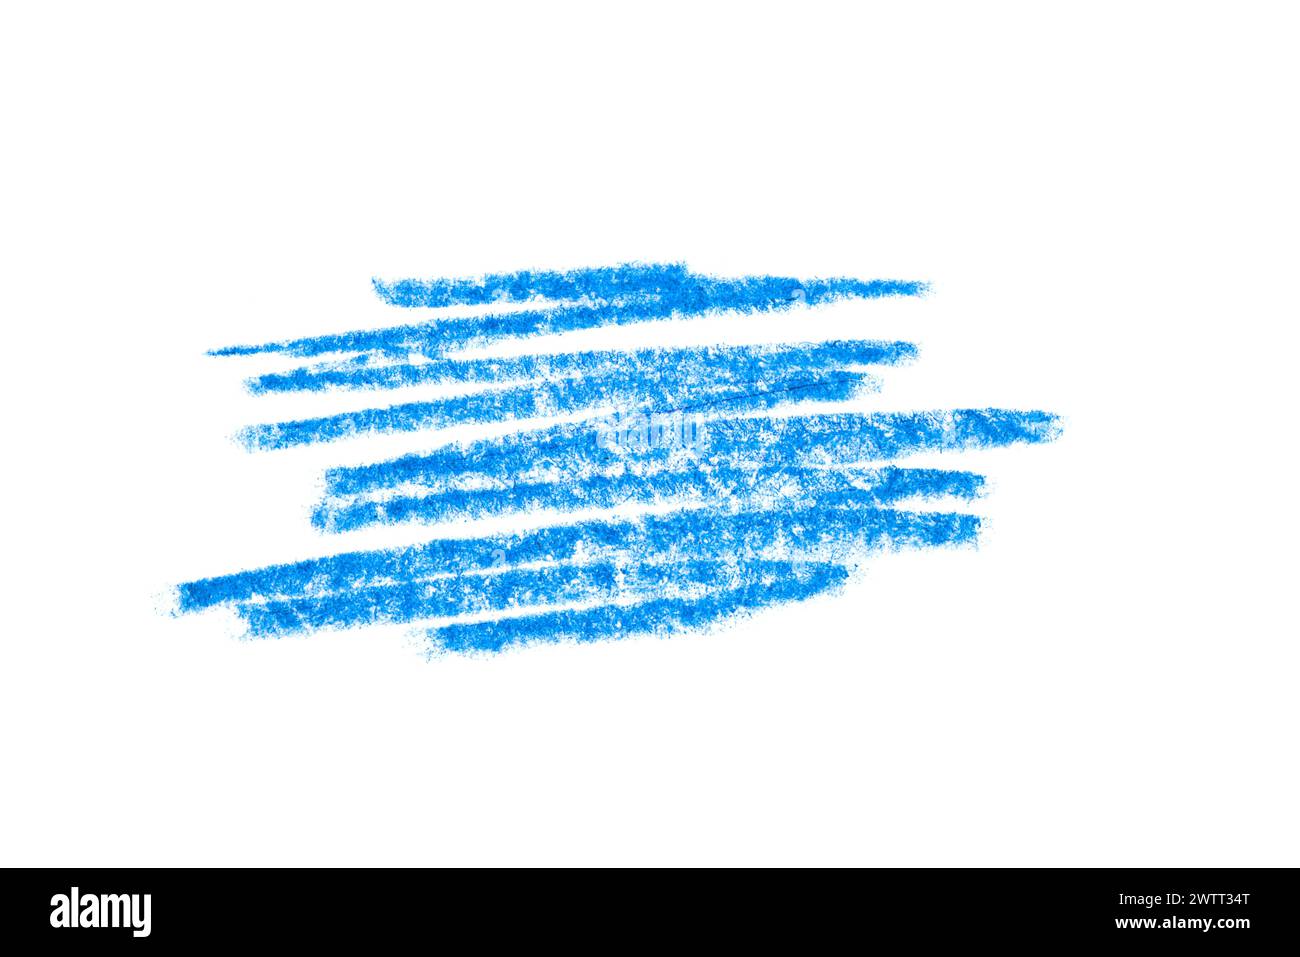 Trait de crayon bleu artistique sur toile blanche pour la conception de votre logo de marque. Banque D'Images